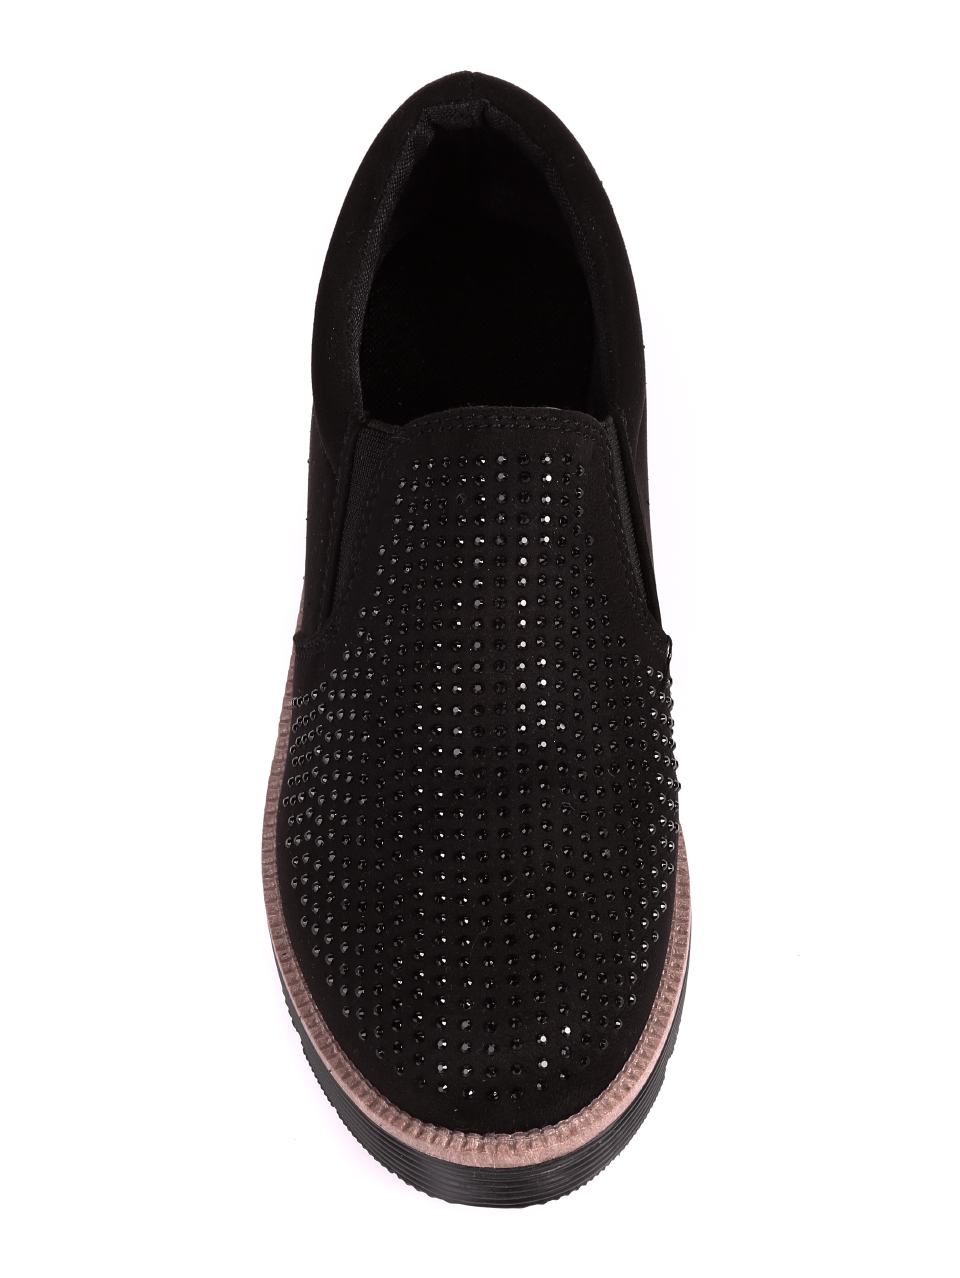 Ежедневни дамски обувки с декоративни камъни в черно 3U-20615 black